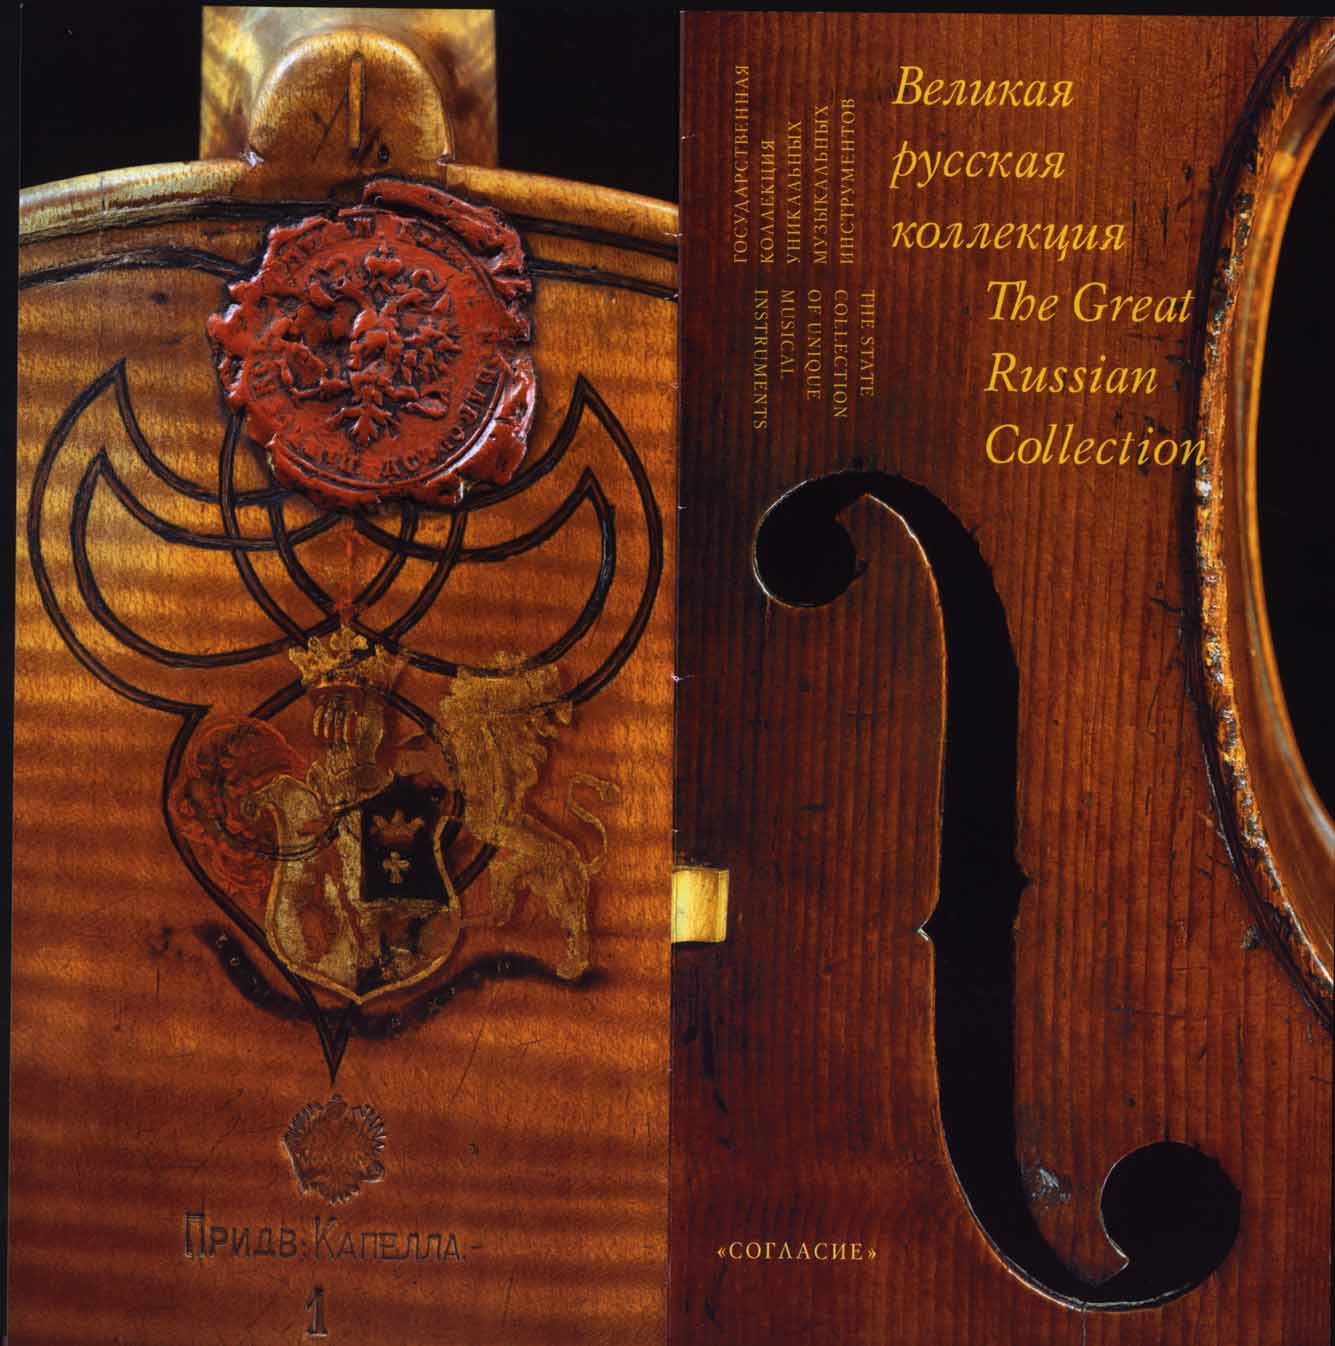 Государственная коллекция уникальных музыкальных инструментов - обложка